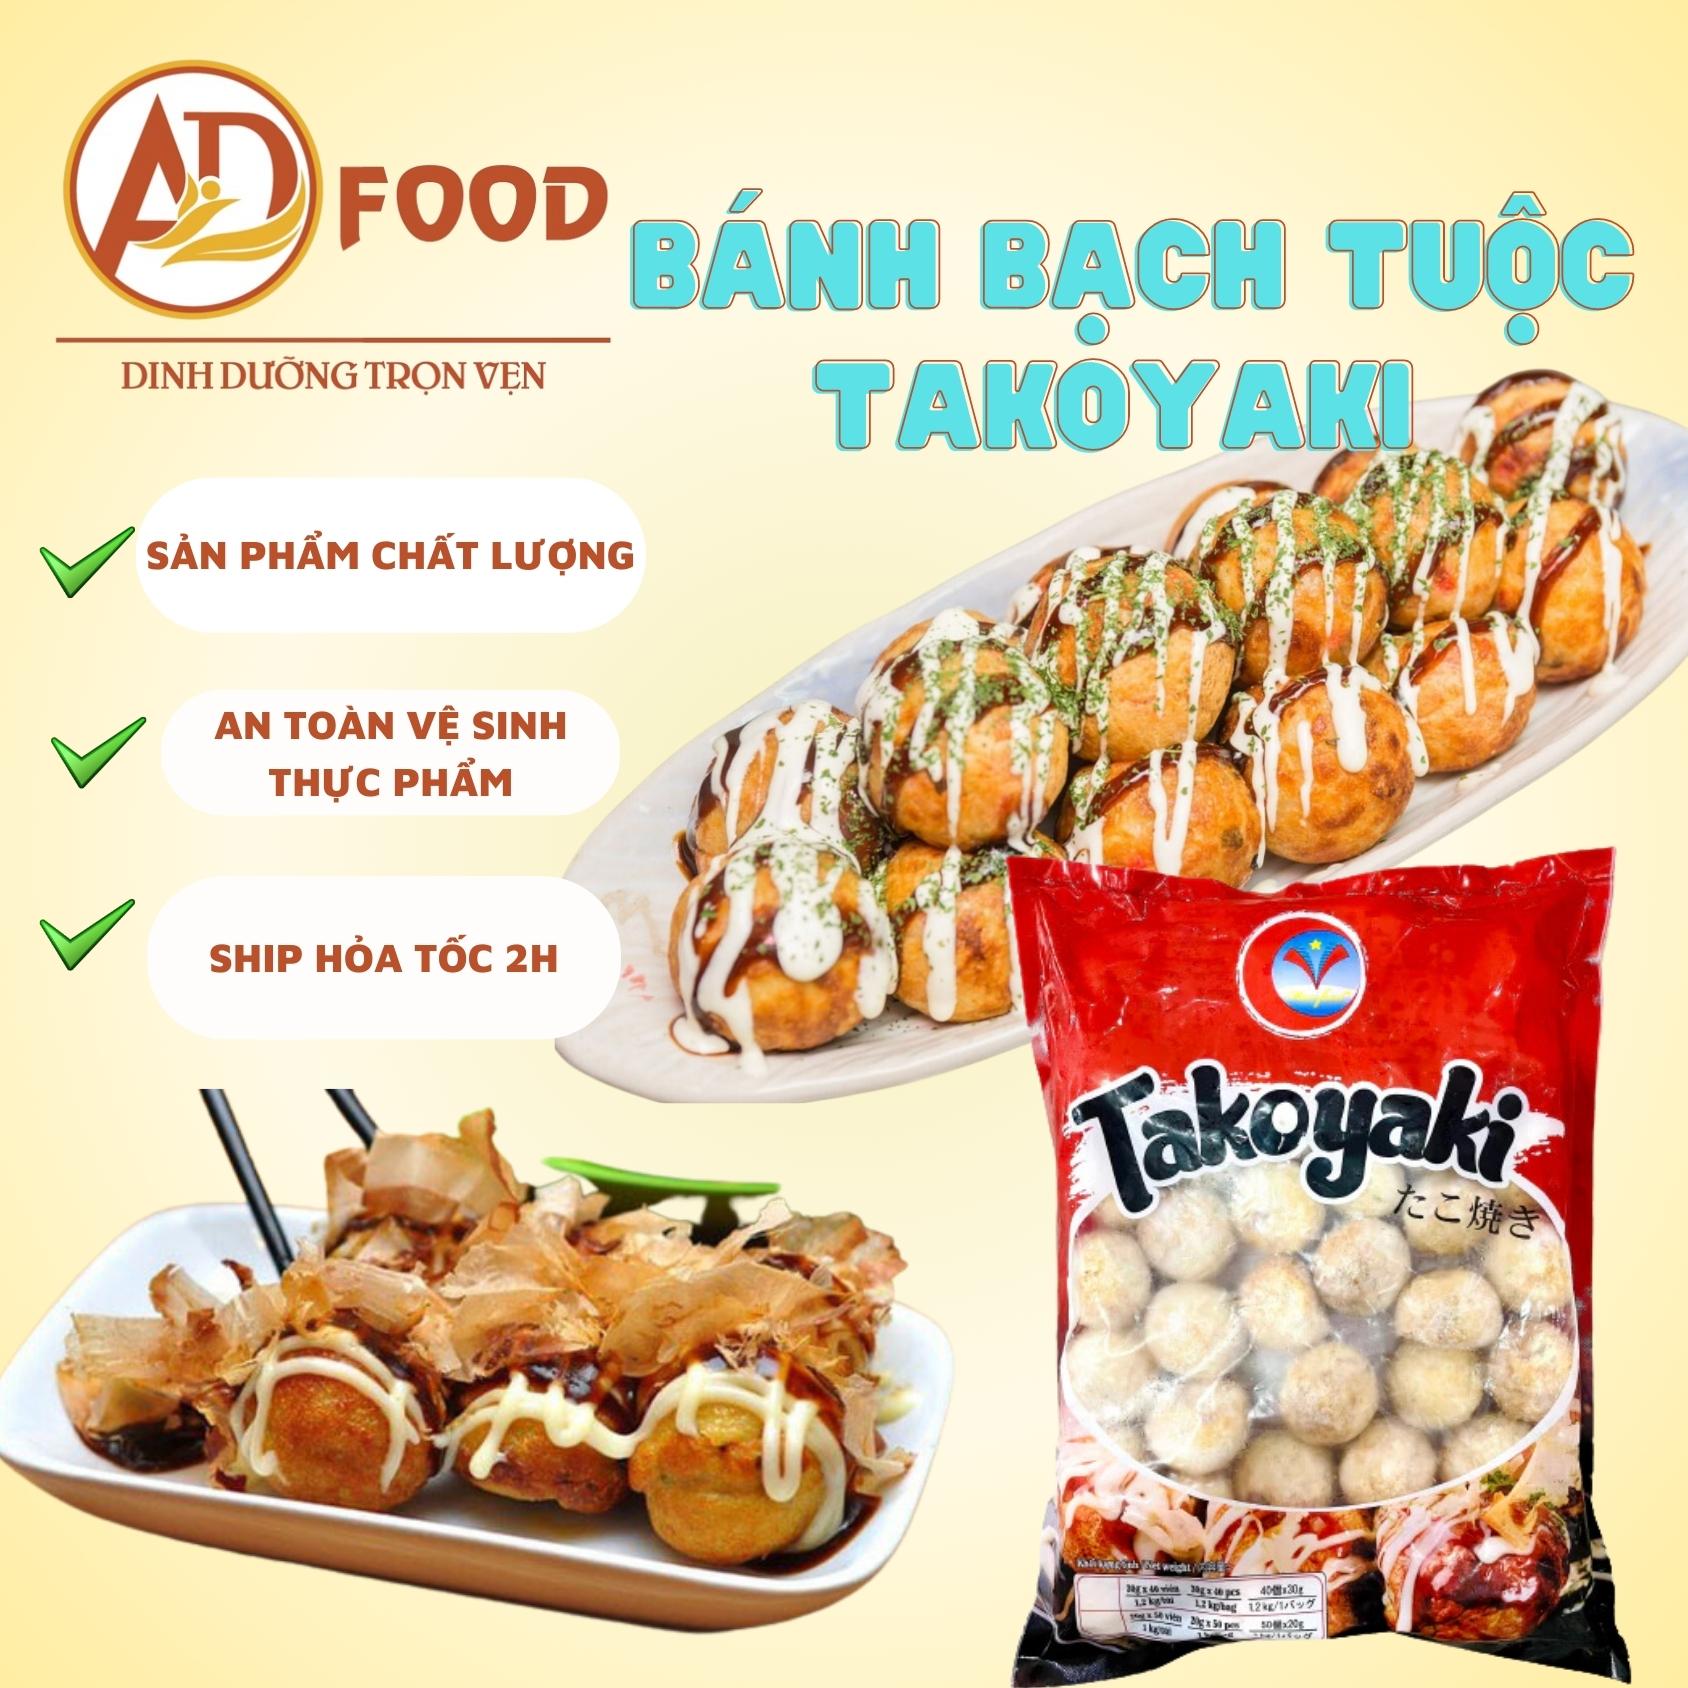 10 viên bánh bạch tuộc Tokoyaki Malaysia